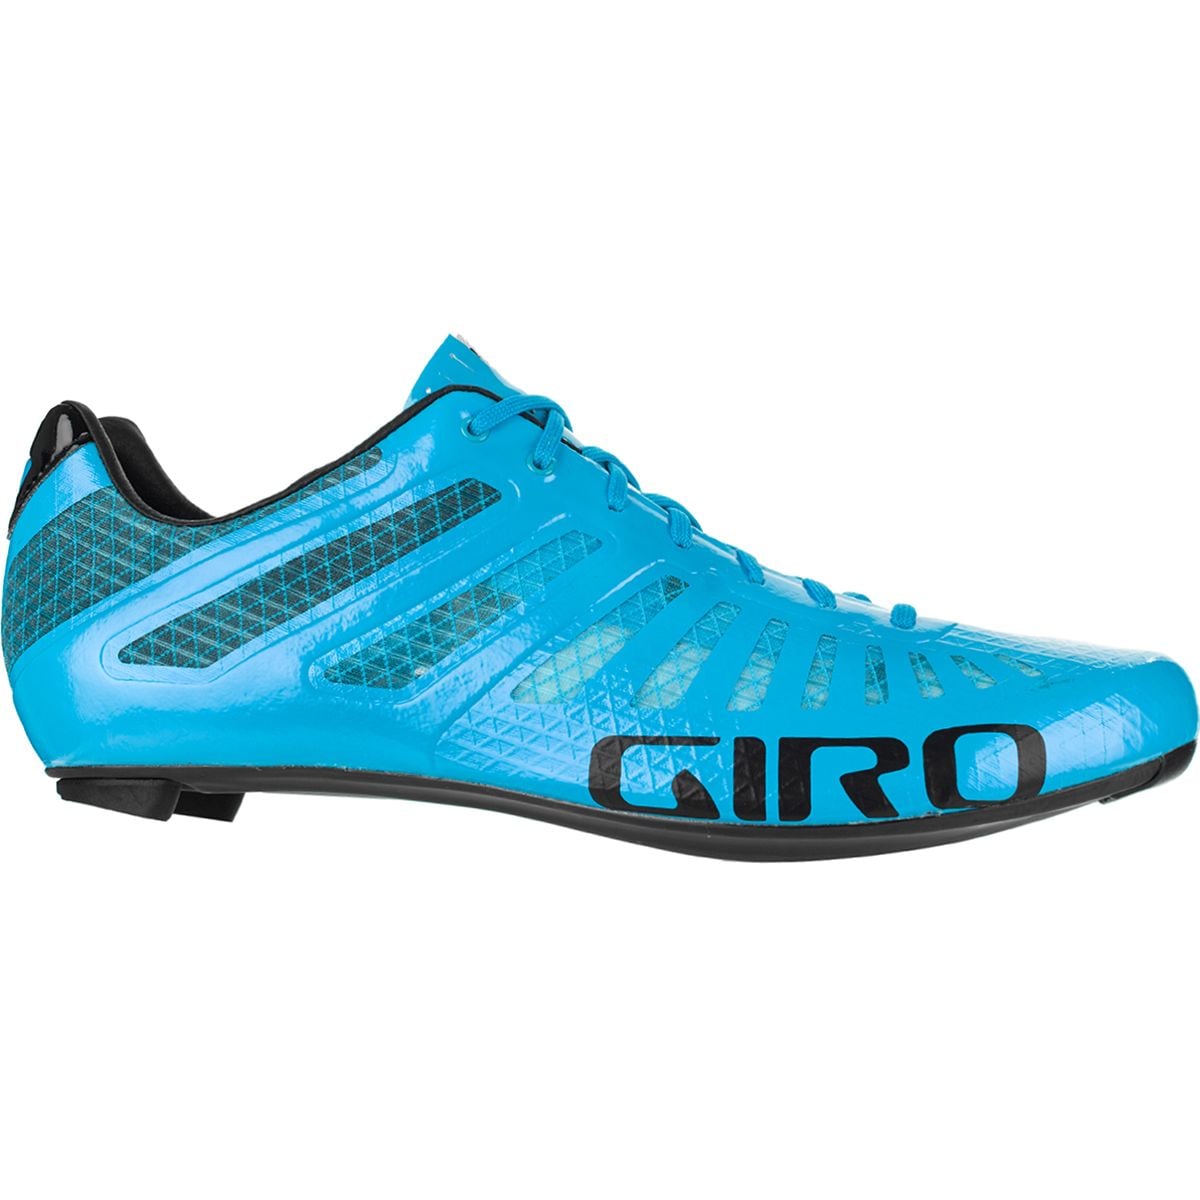 Giro Empire SLX Cycling Shoe - Men's